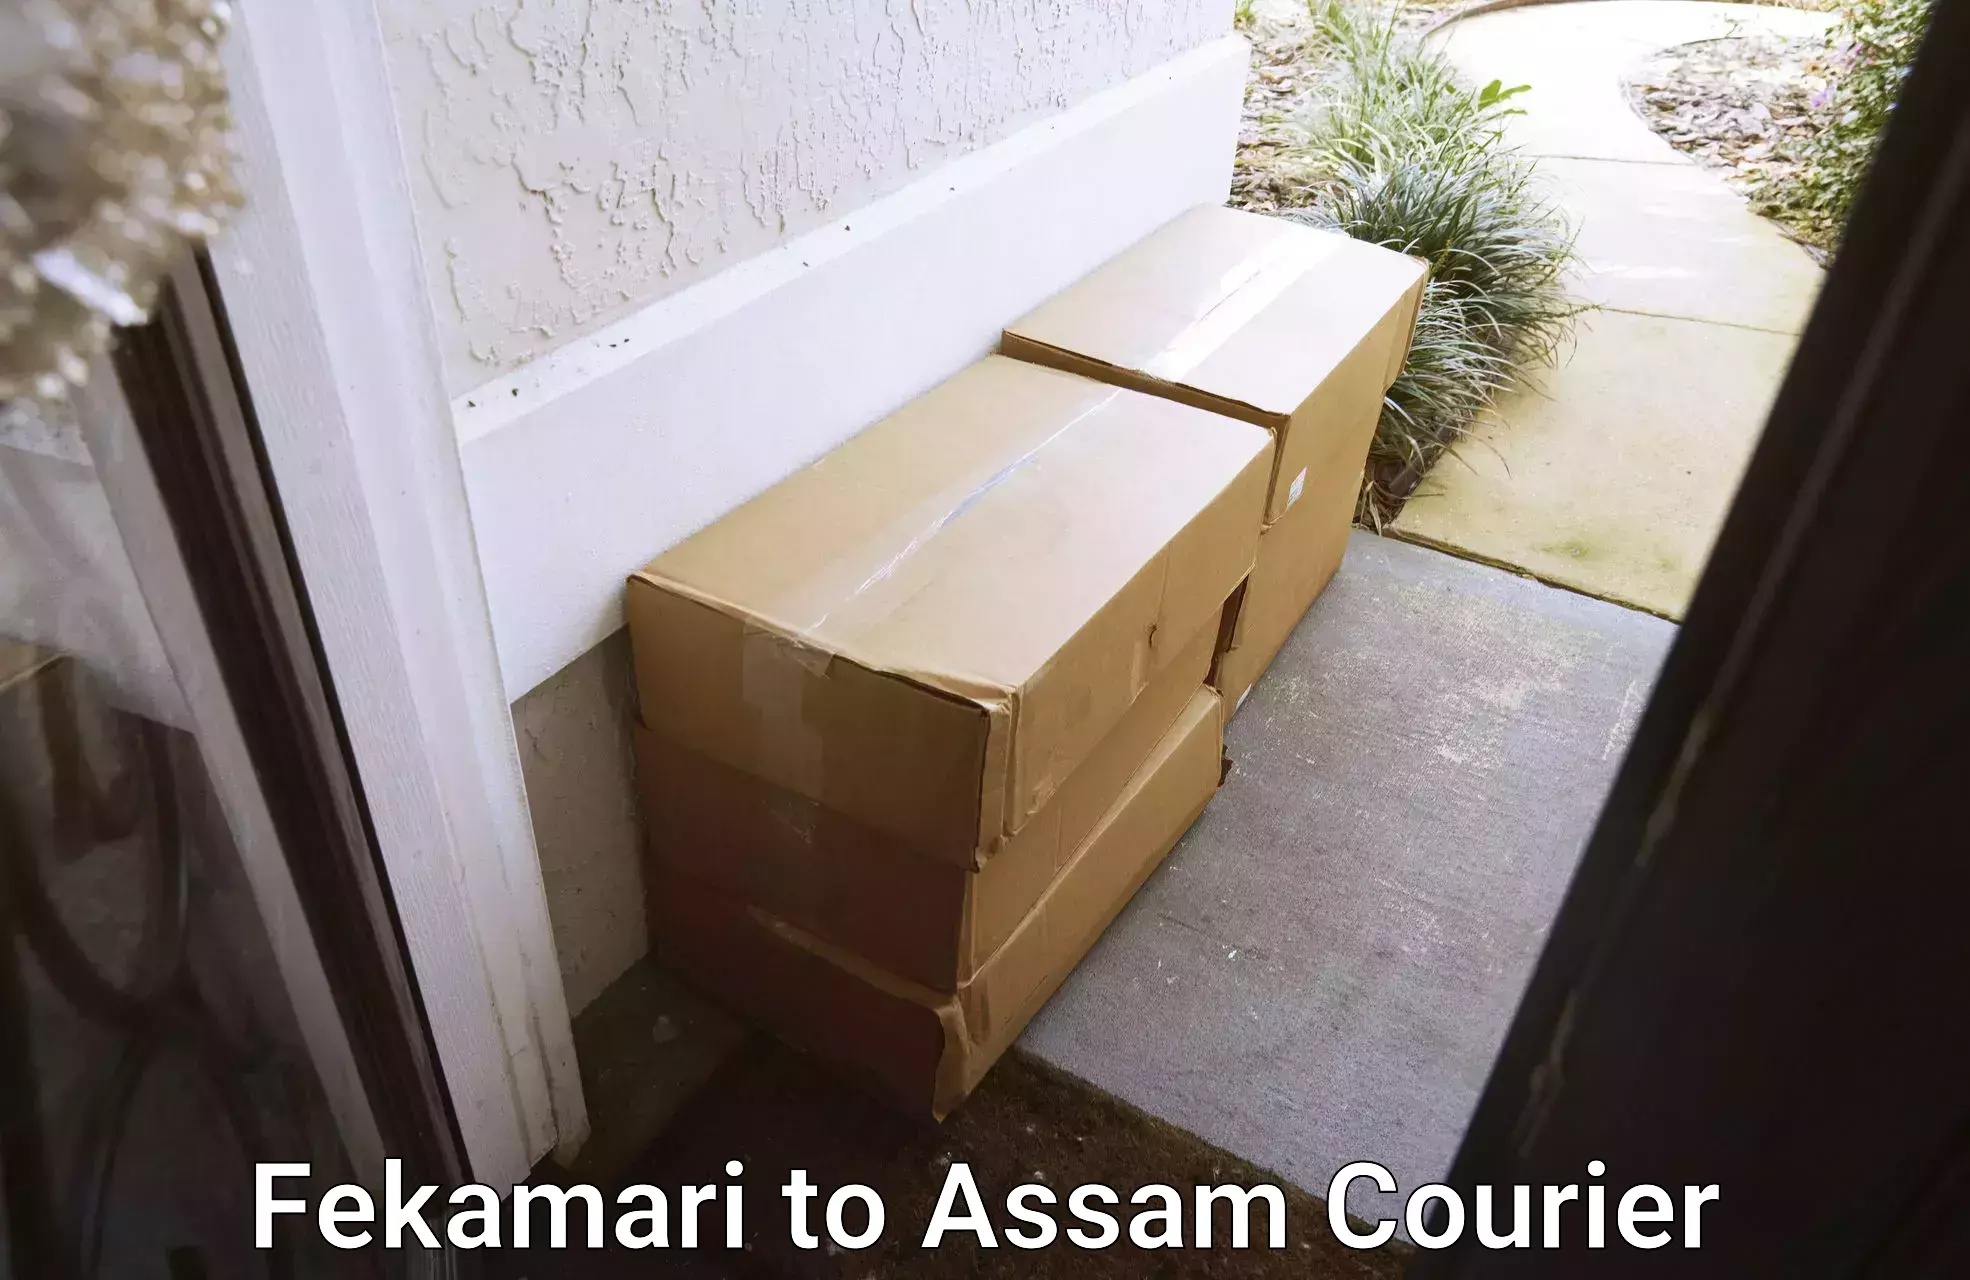 Advanced parcel tracking Fekamari to Fekamari